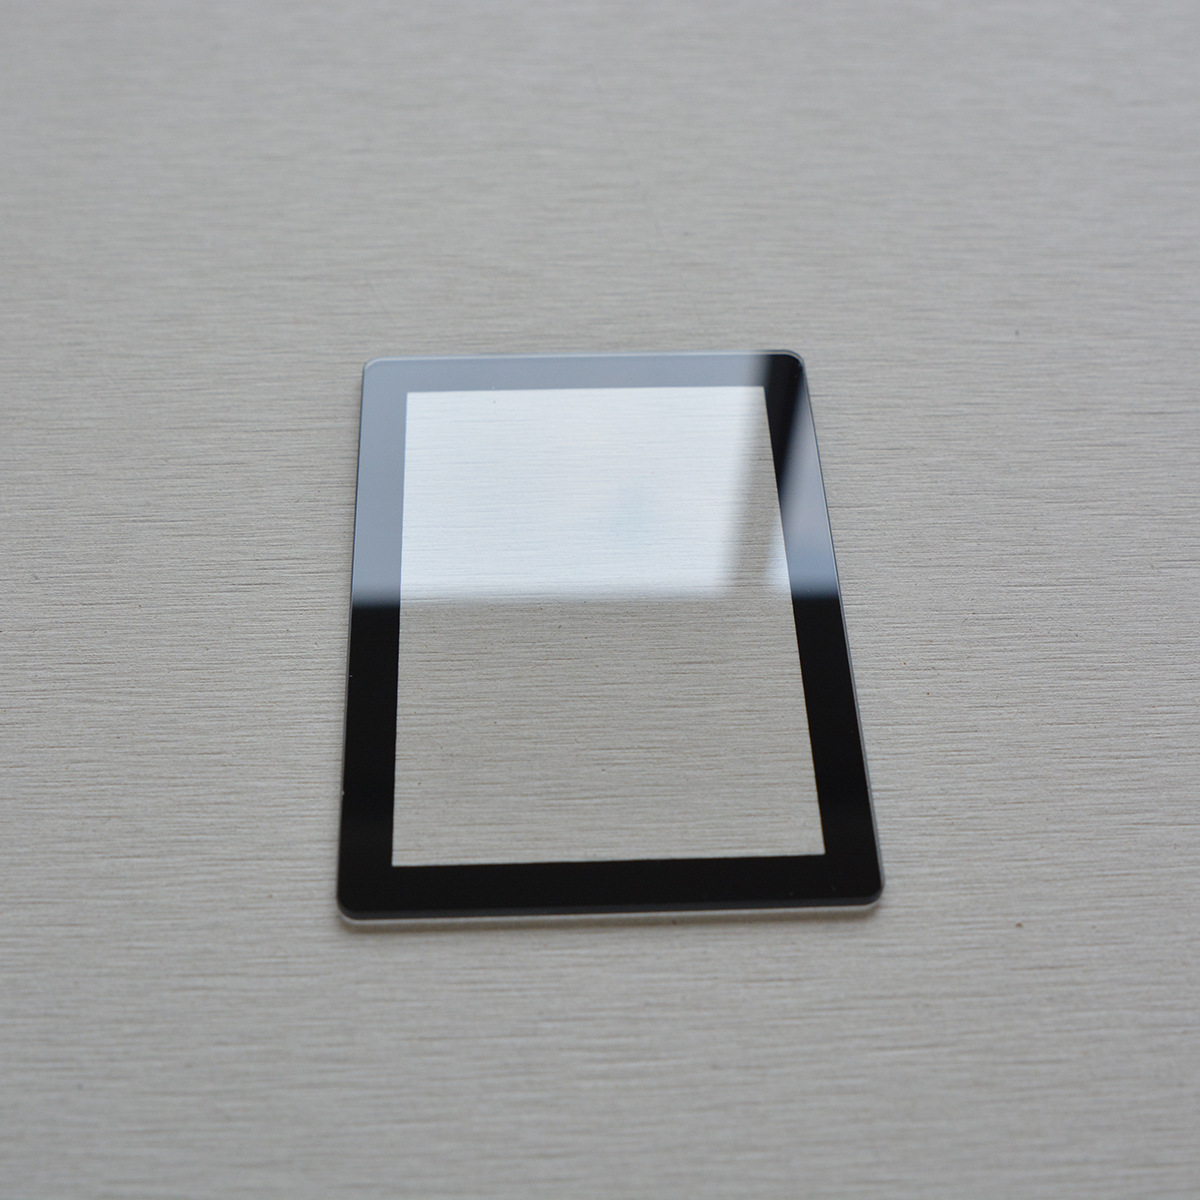 优惠定制加工生产设备面板屏幕保护防刮花丝印黑边框钢化玻璃盖板